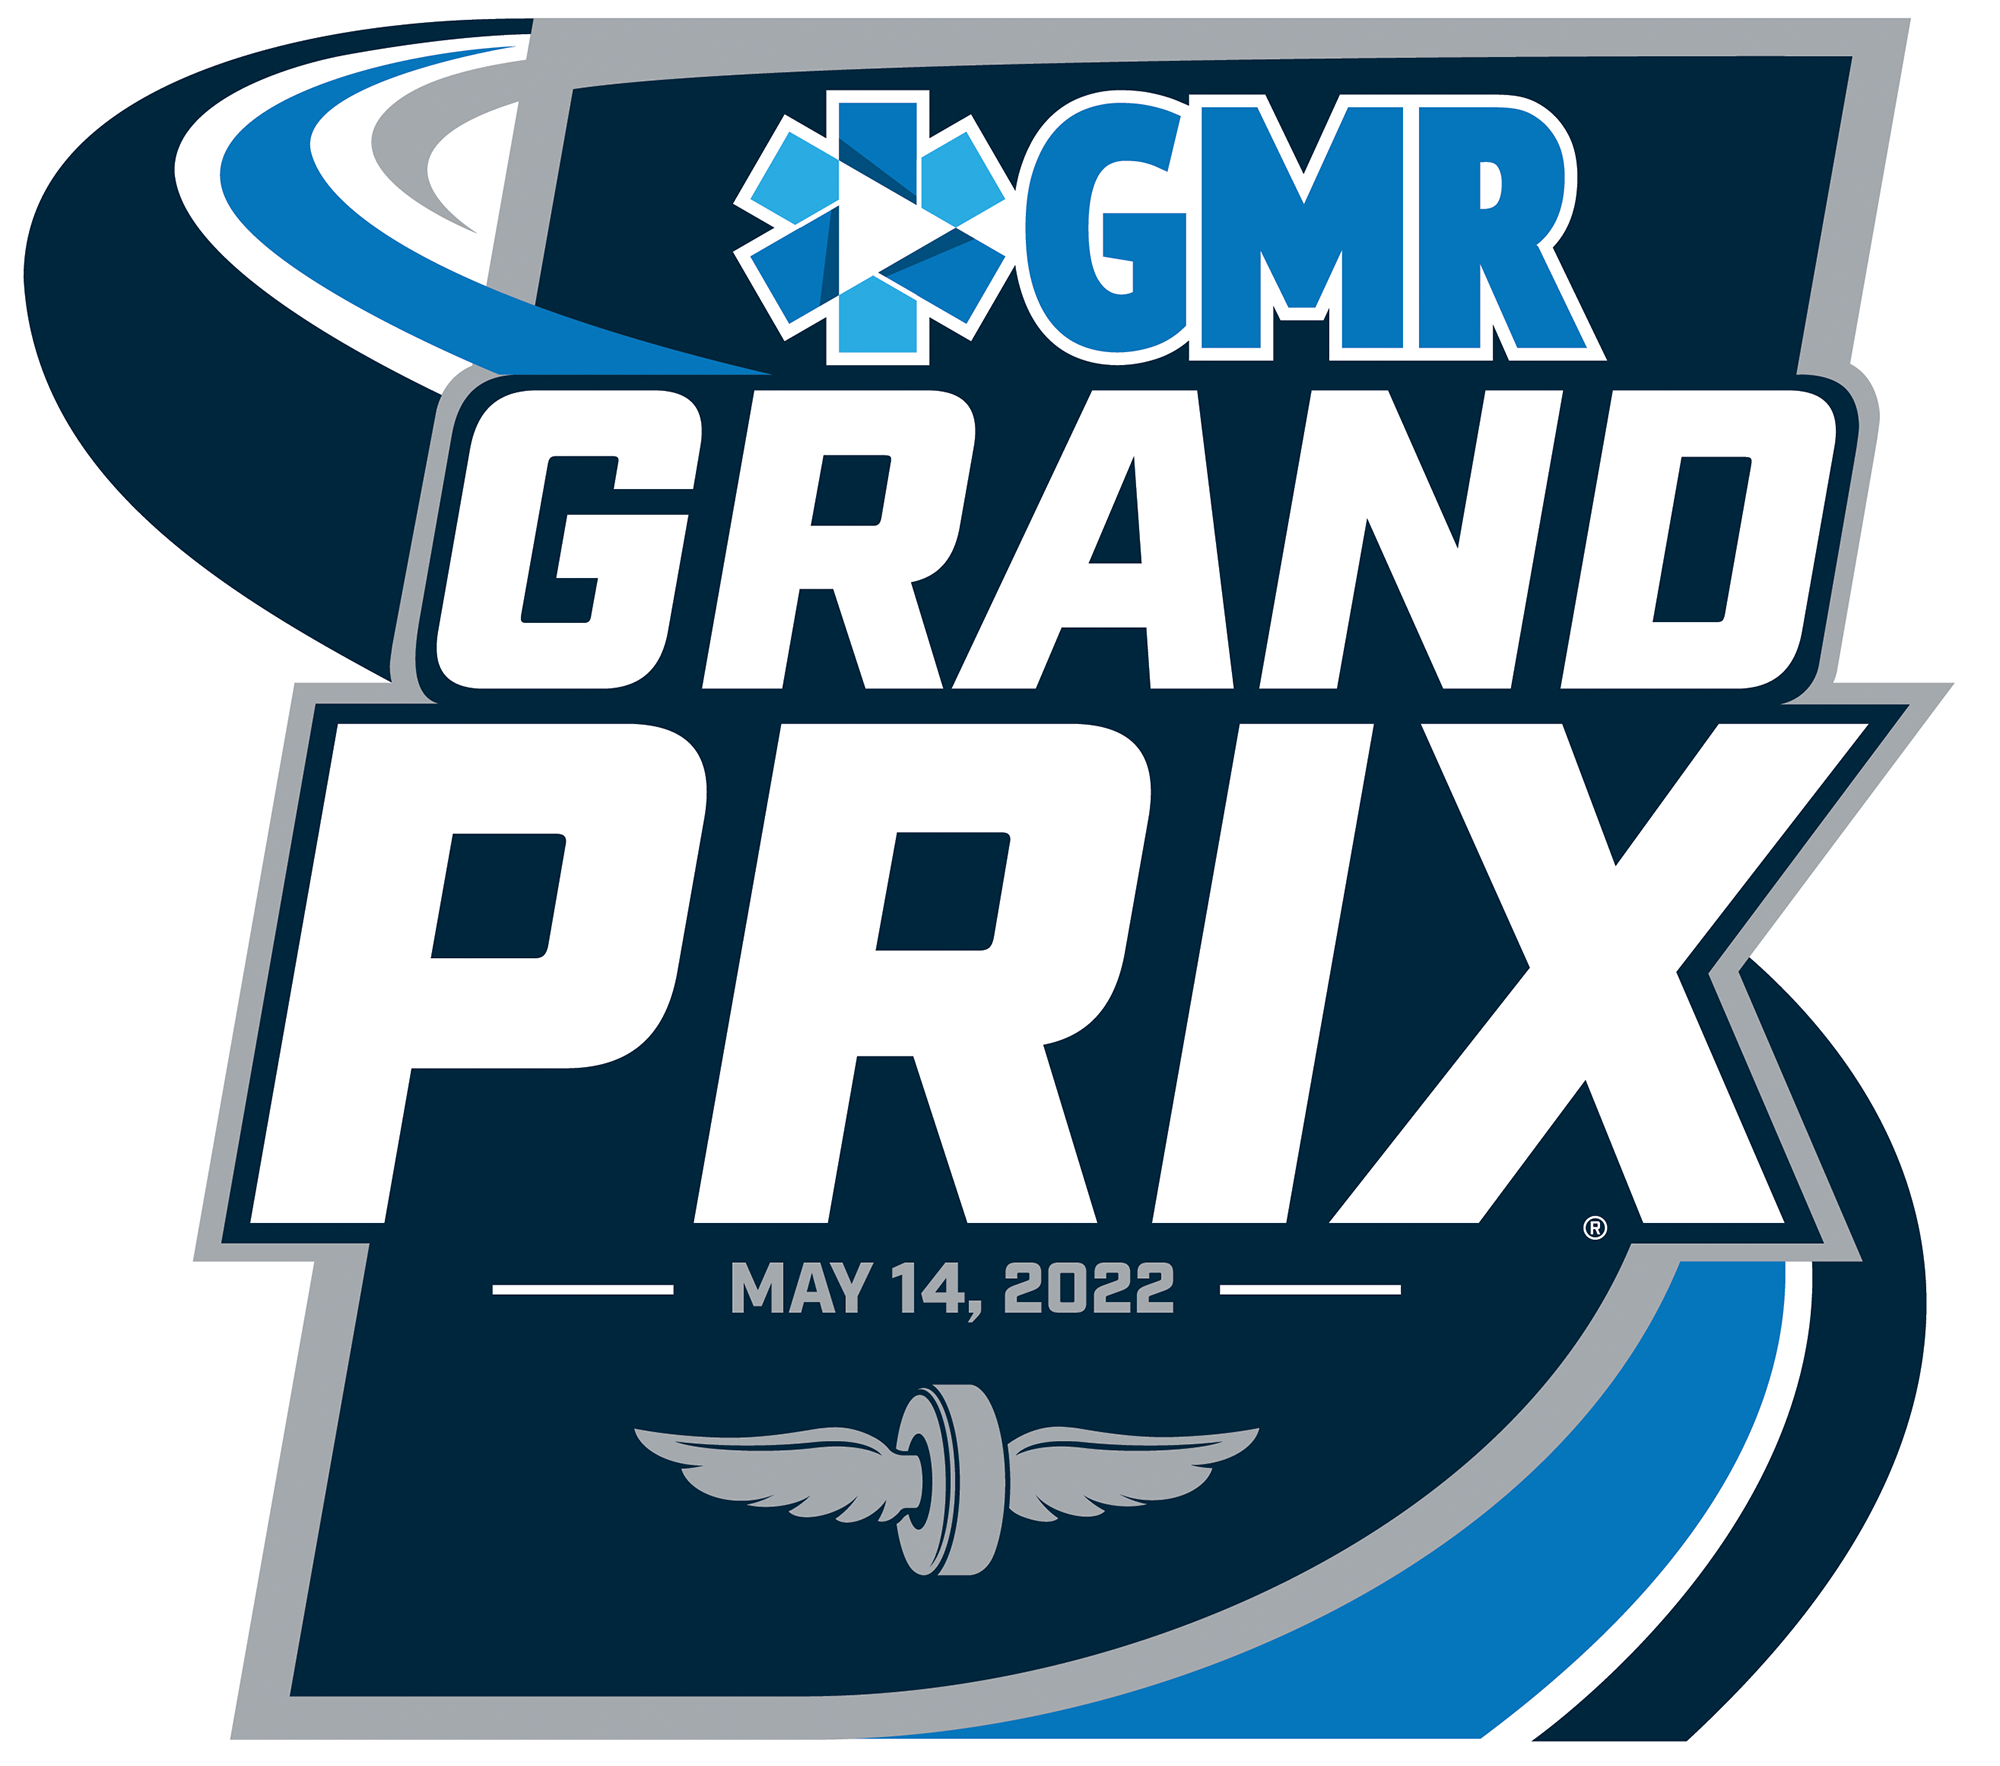 IndyCar Grand Prix